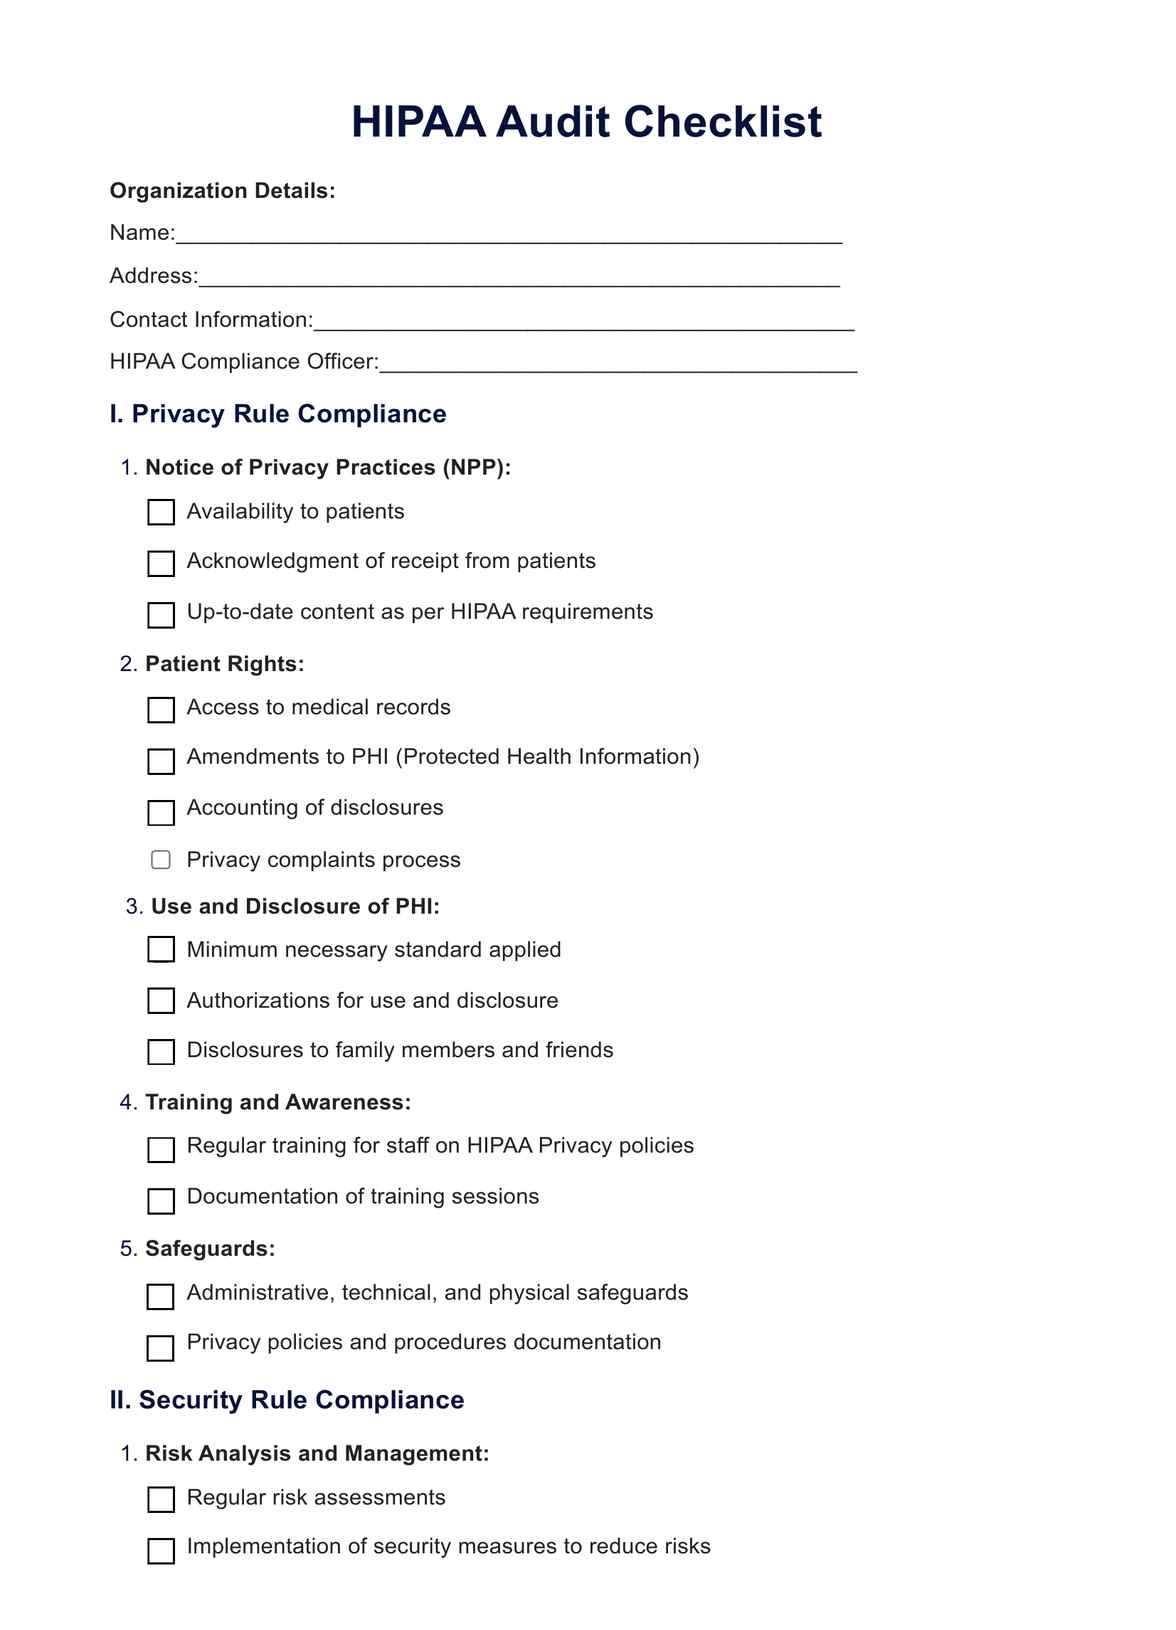 HIPAA Audit PDF Example